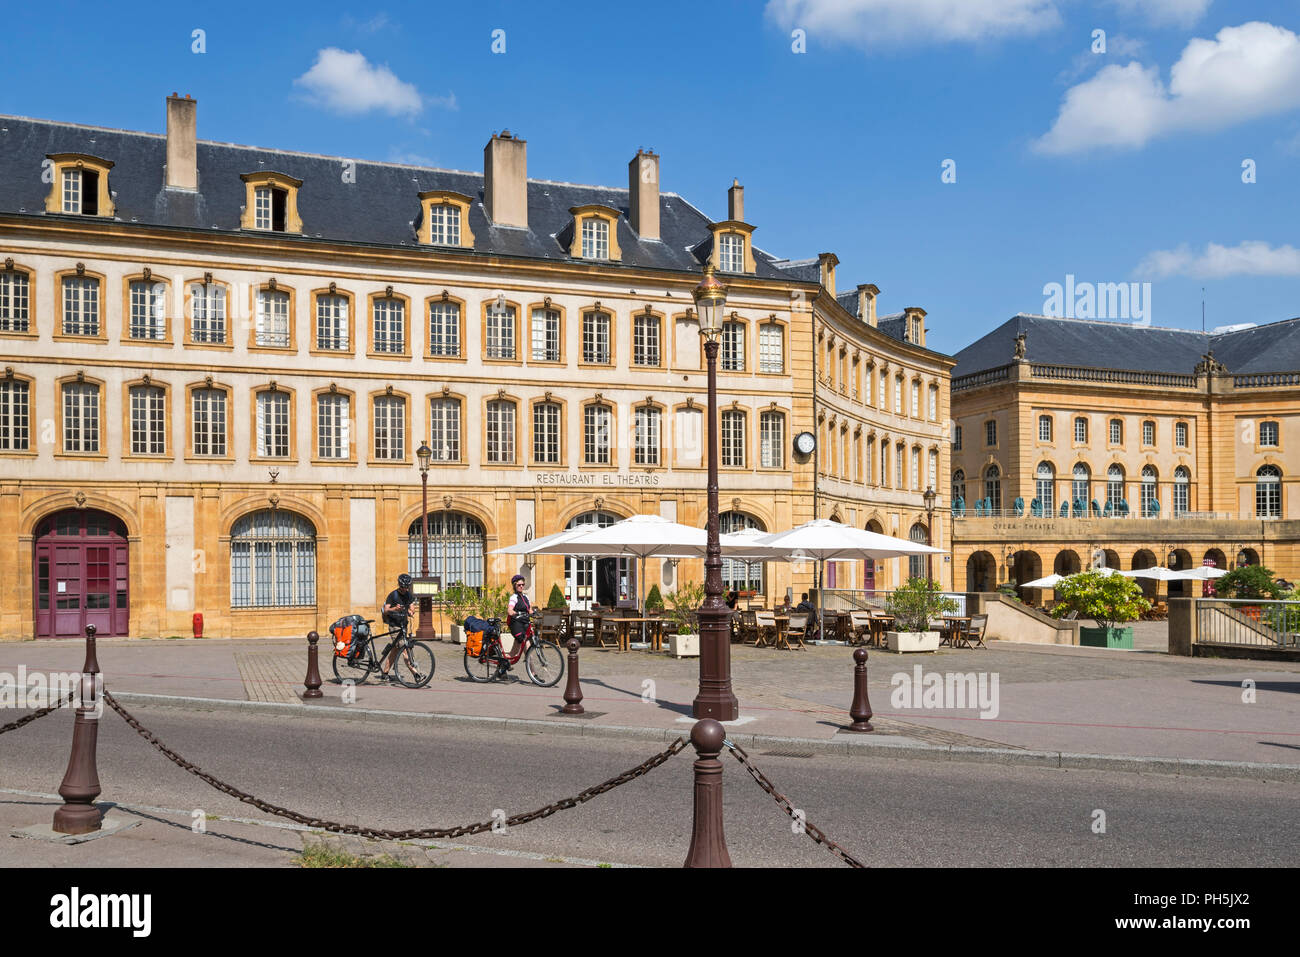 Radfahrer vor dem Restaurant El Theatris an der Place de la Comédie/Komödie Platz der Stadt Metz, Moselle, Lorraine, Frankreich Stockfoto